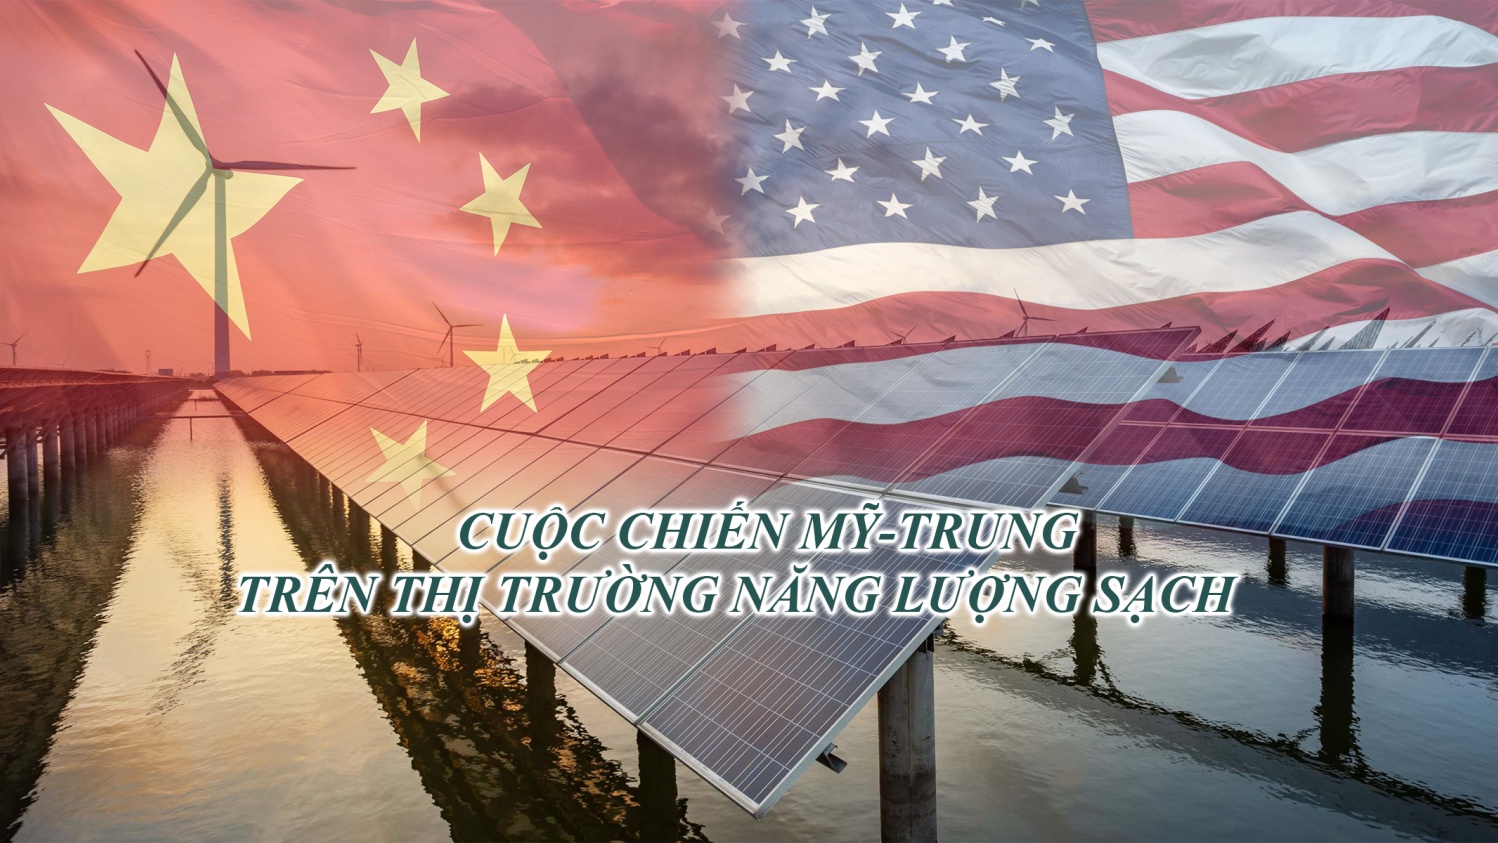 Cuộc chiến Mỹ-Trung trên thị trường năng lượng sạch